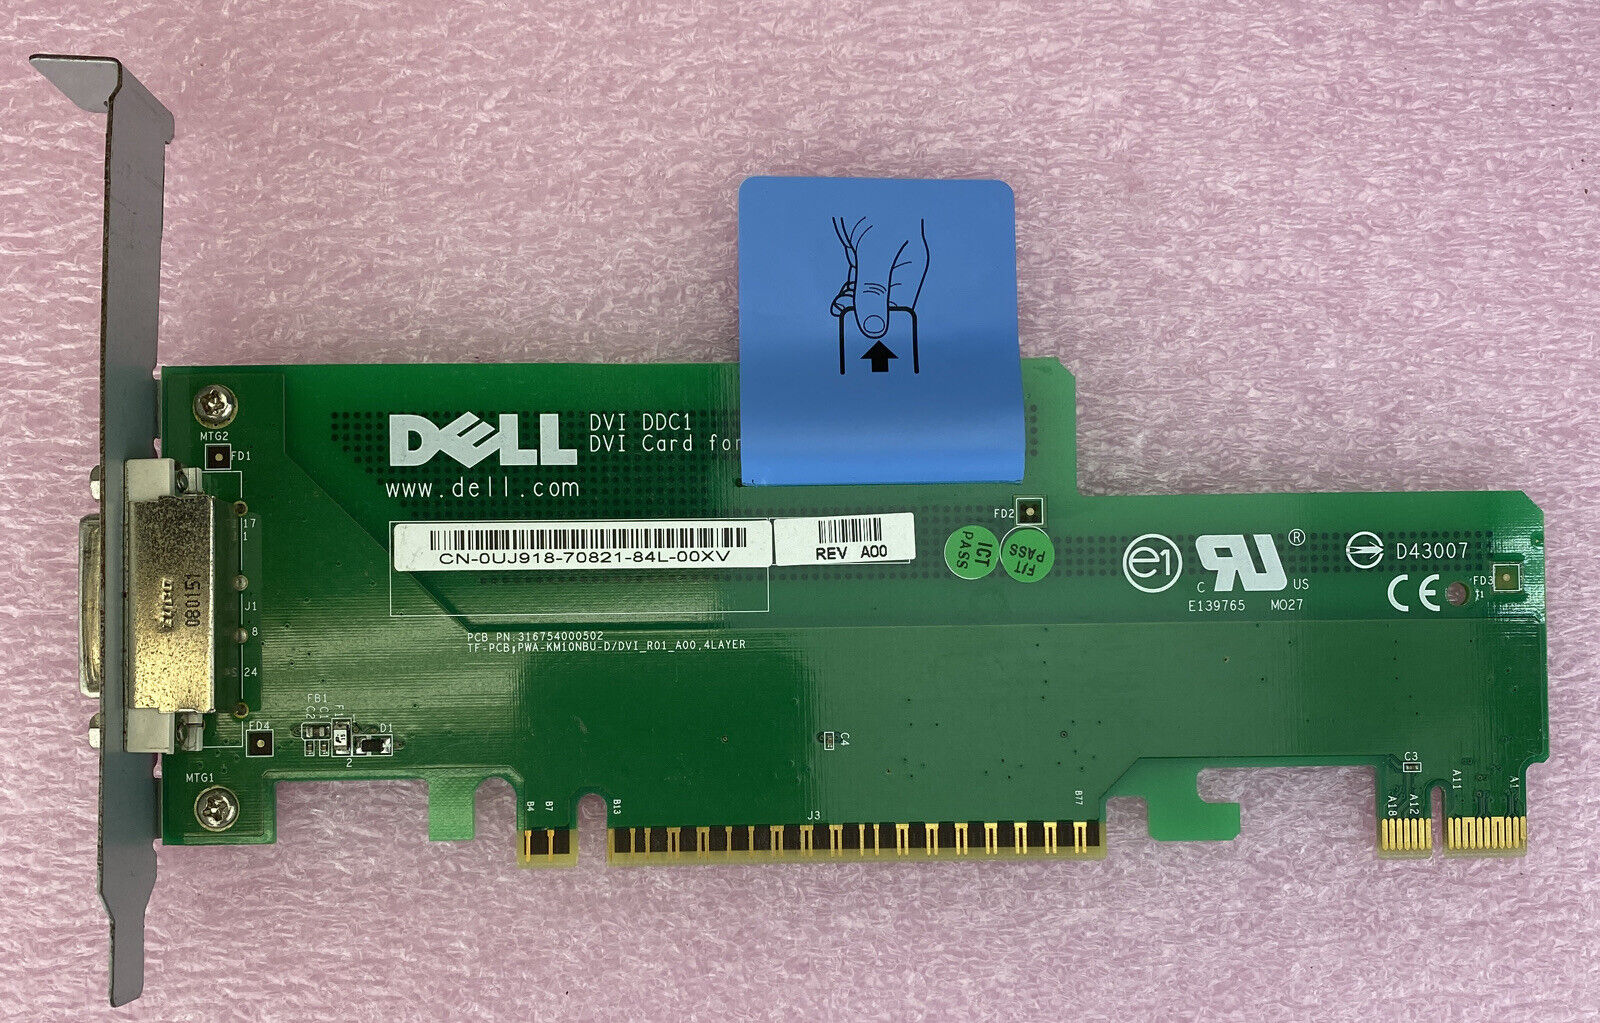 Dell OUJ918 OPTIPLEX 740 DDC1 DVI PCI video graphics card GPU Full Height